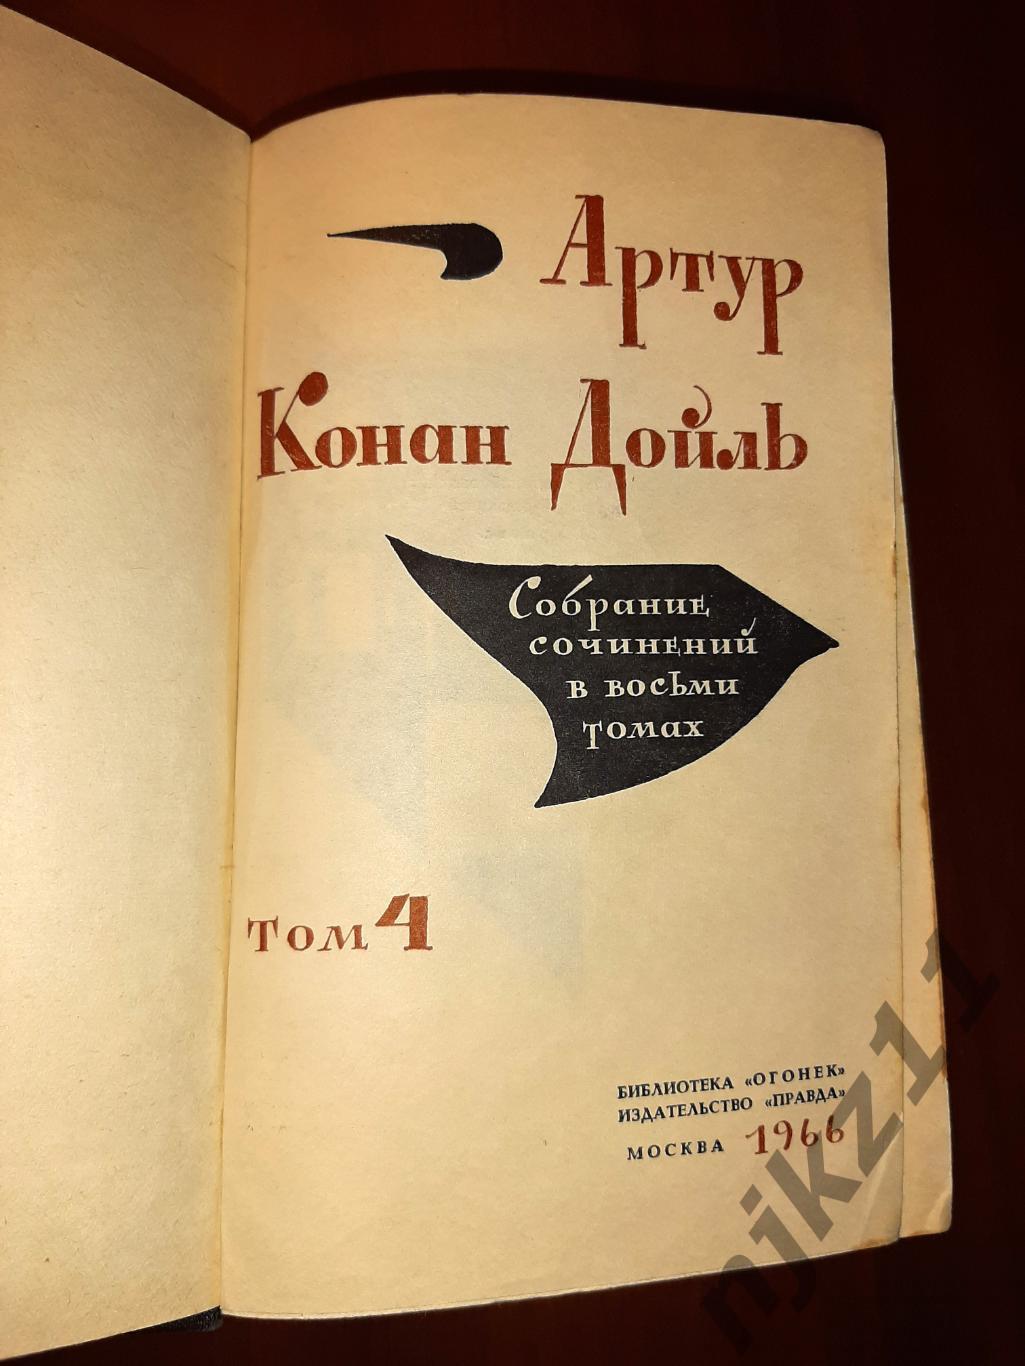 Конан Дойль, Артур Собрание сочинений В 8 томах 1966г состояние так себе 3